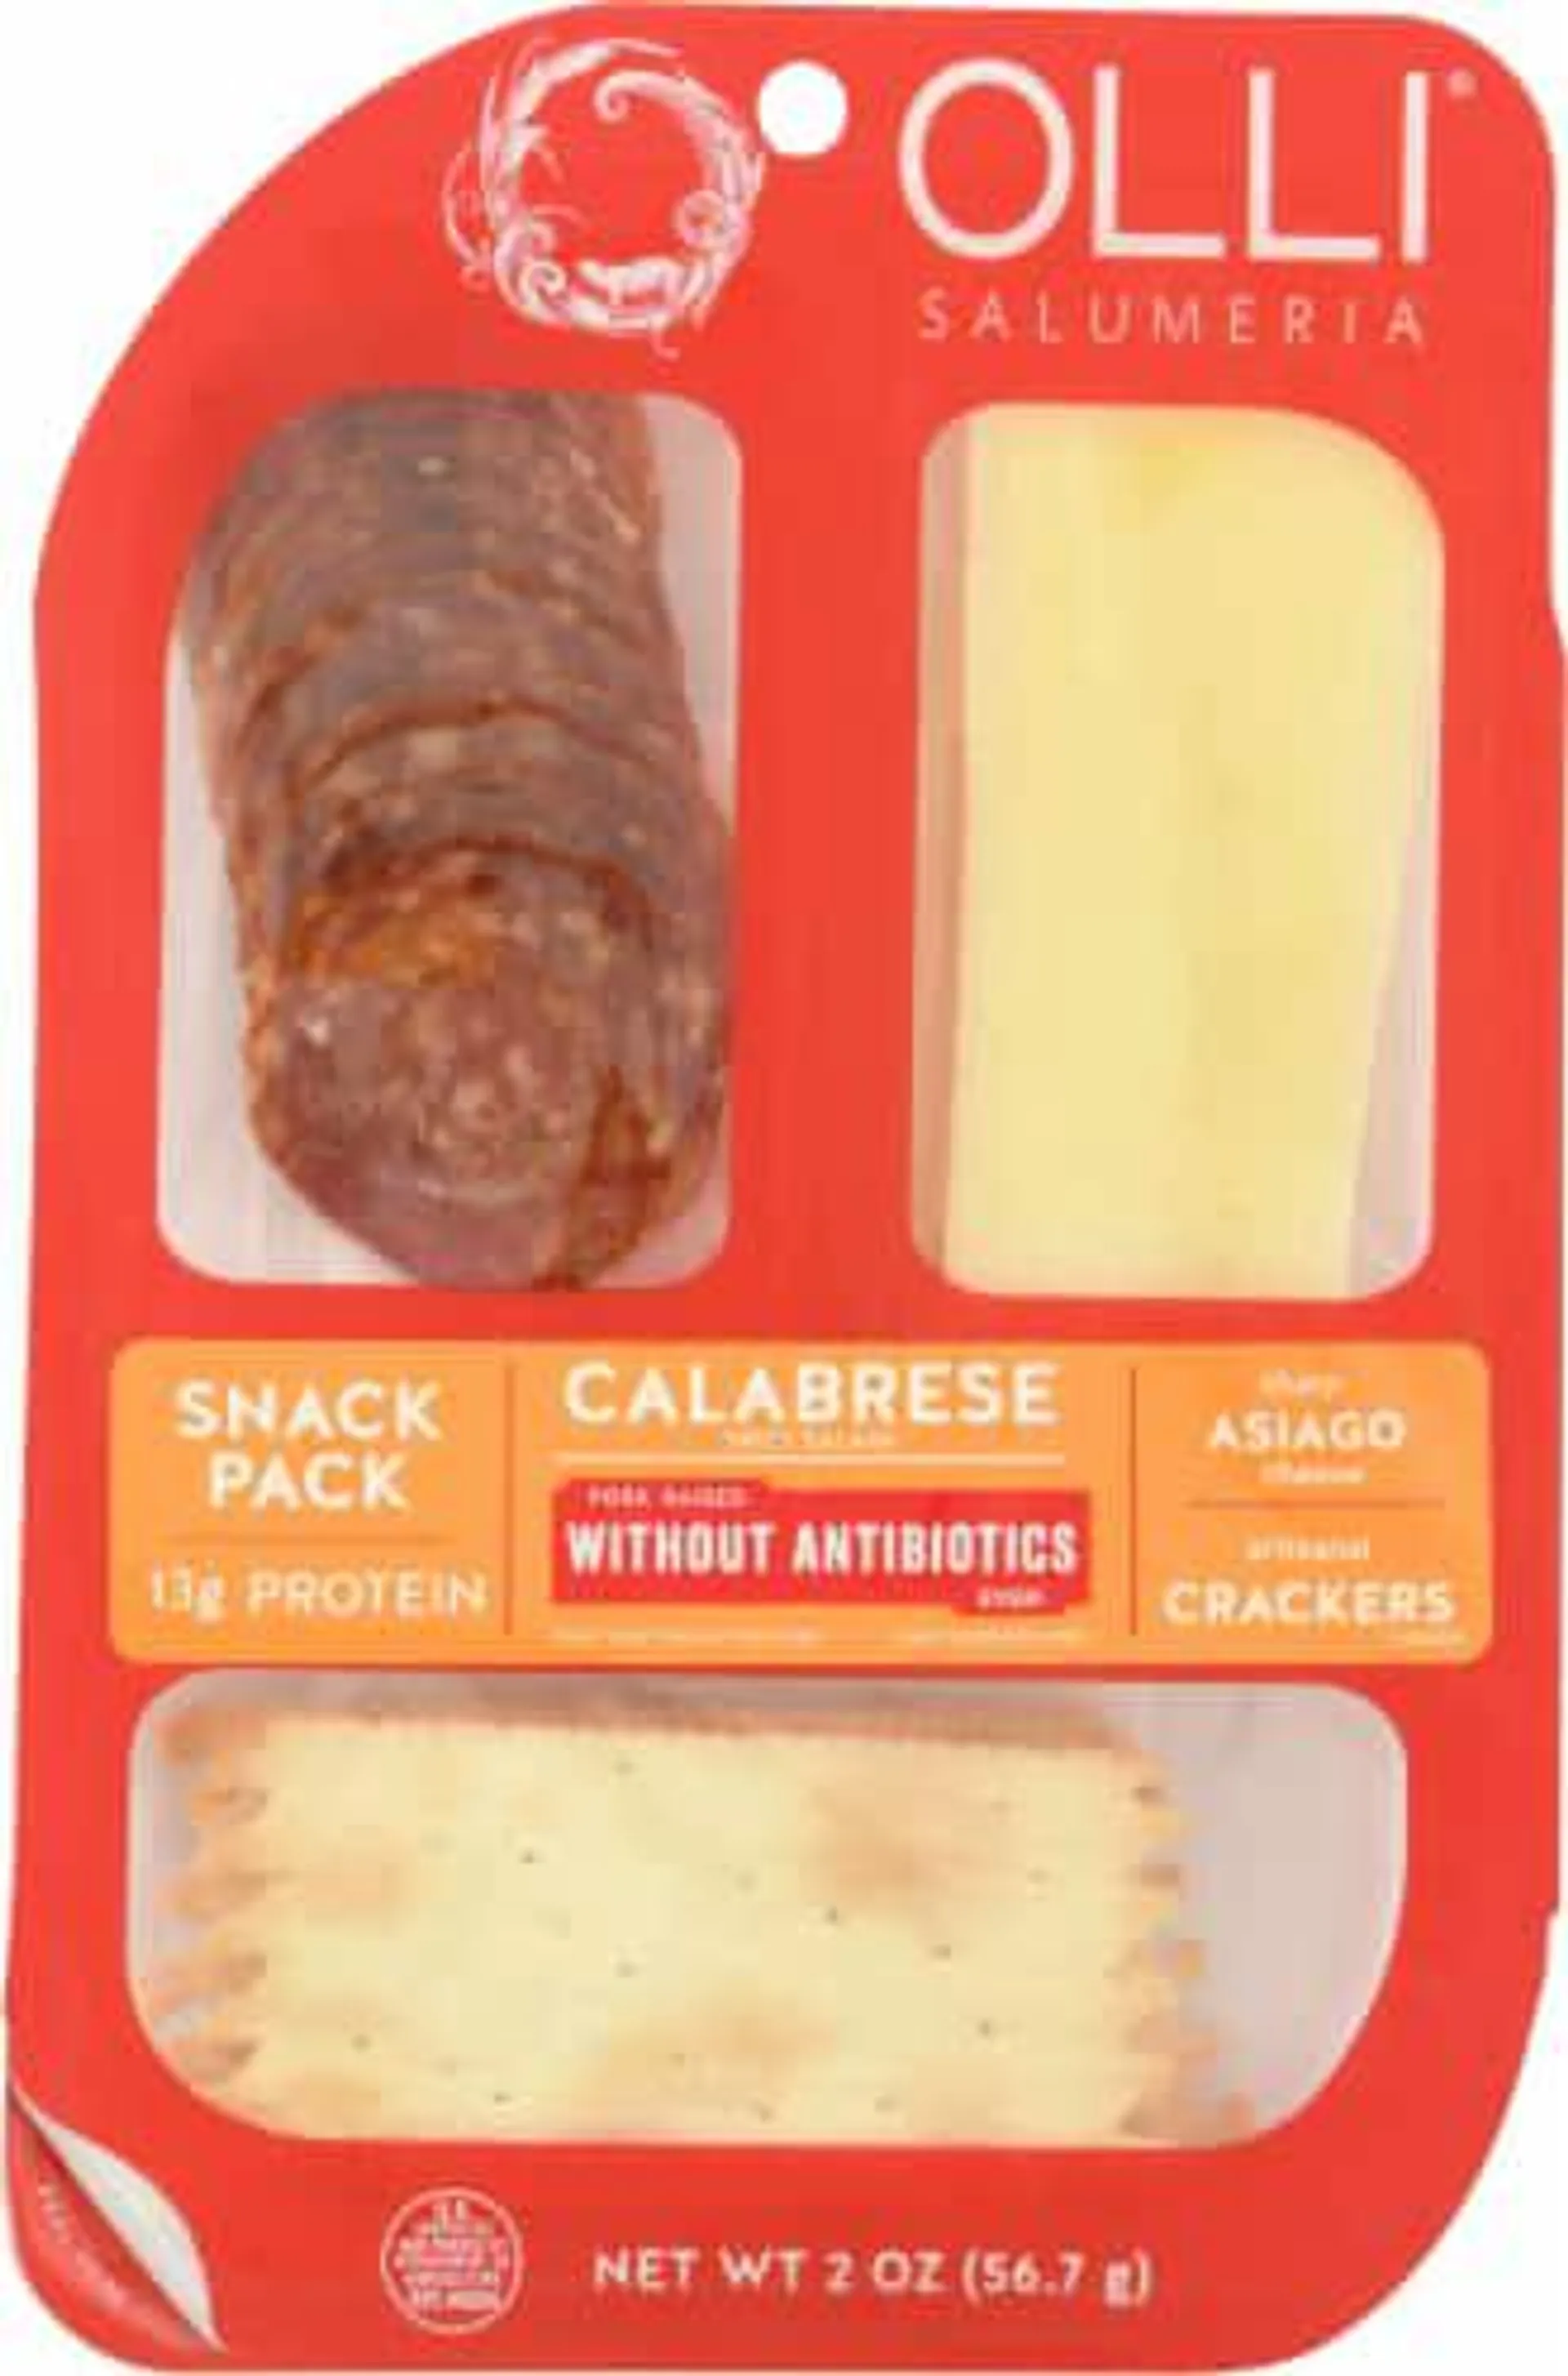 Olli Salumeria Calabrese Spicy Salami Snack Pack